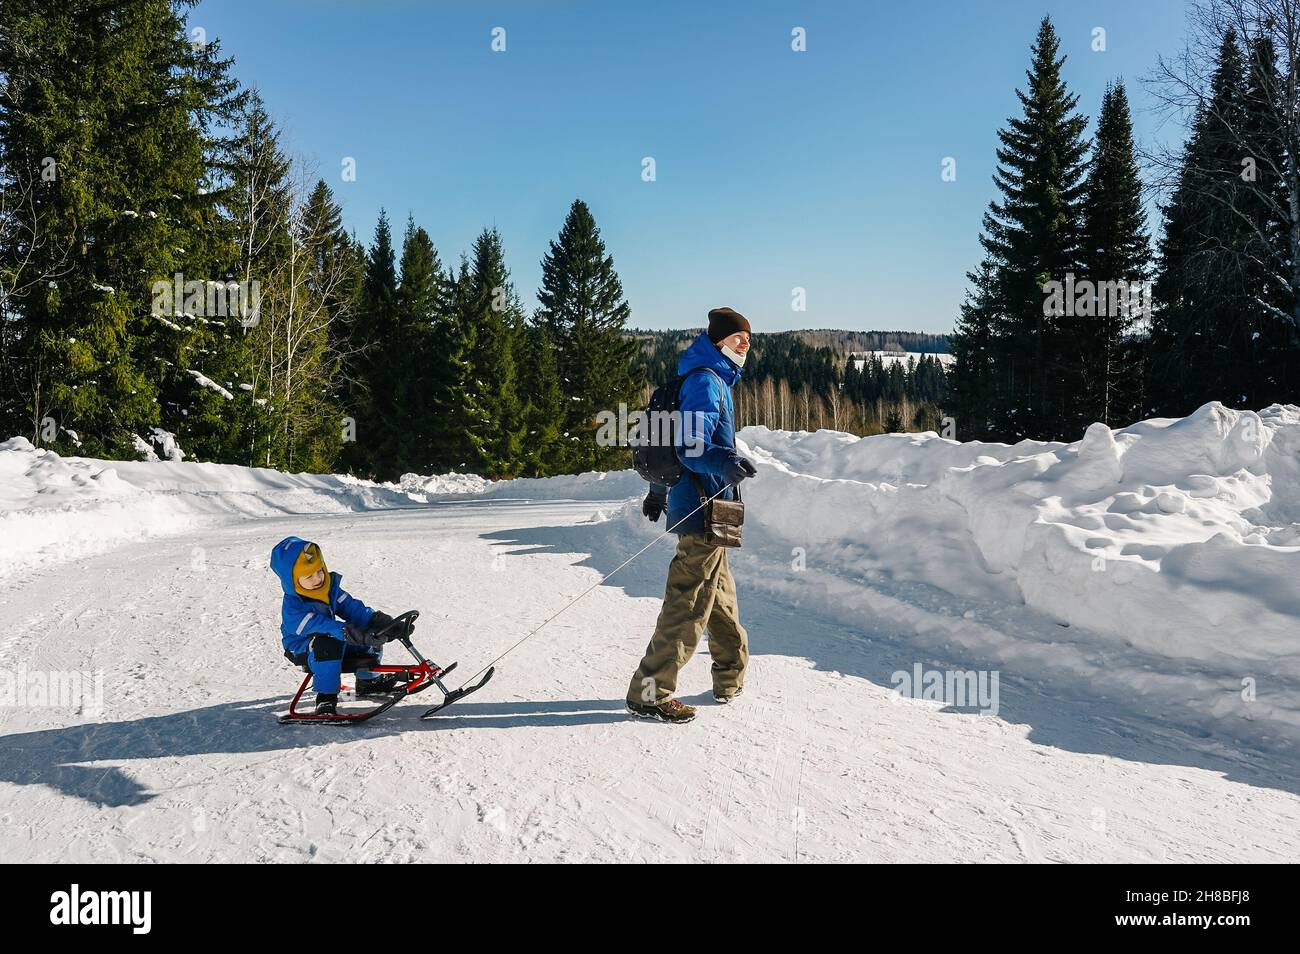 Un homme court et roule un petit garçon sur une motoneige à travers la neige sur la route forestière.Vue avant. Banque D'Images